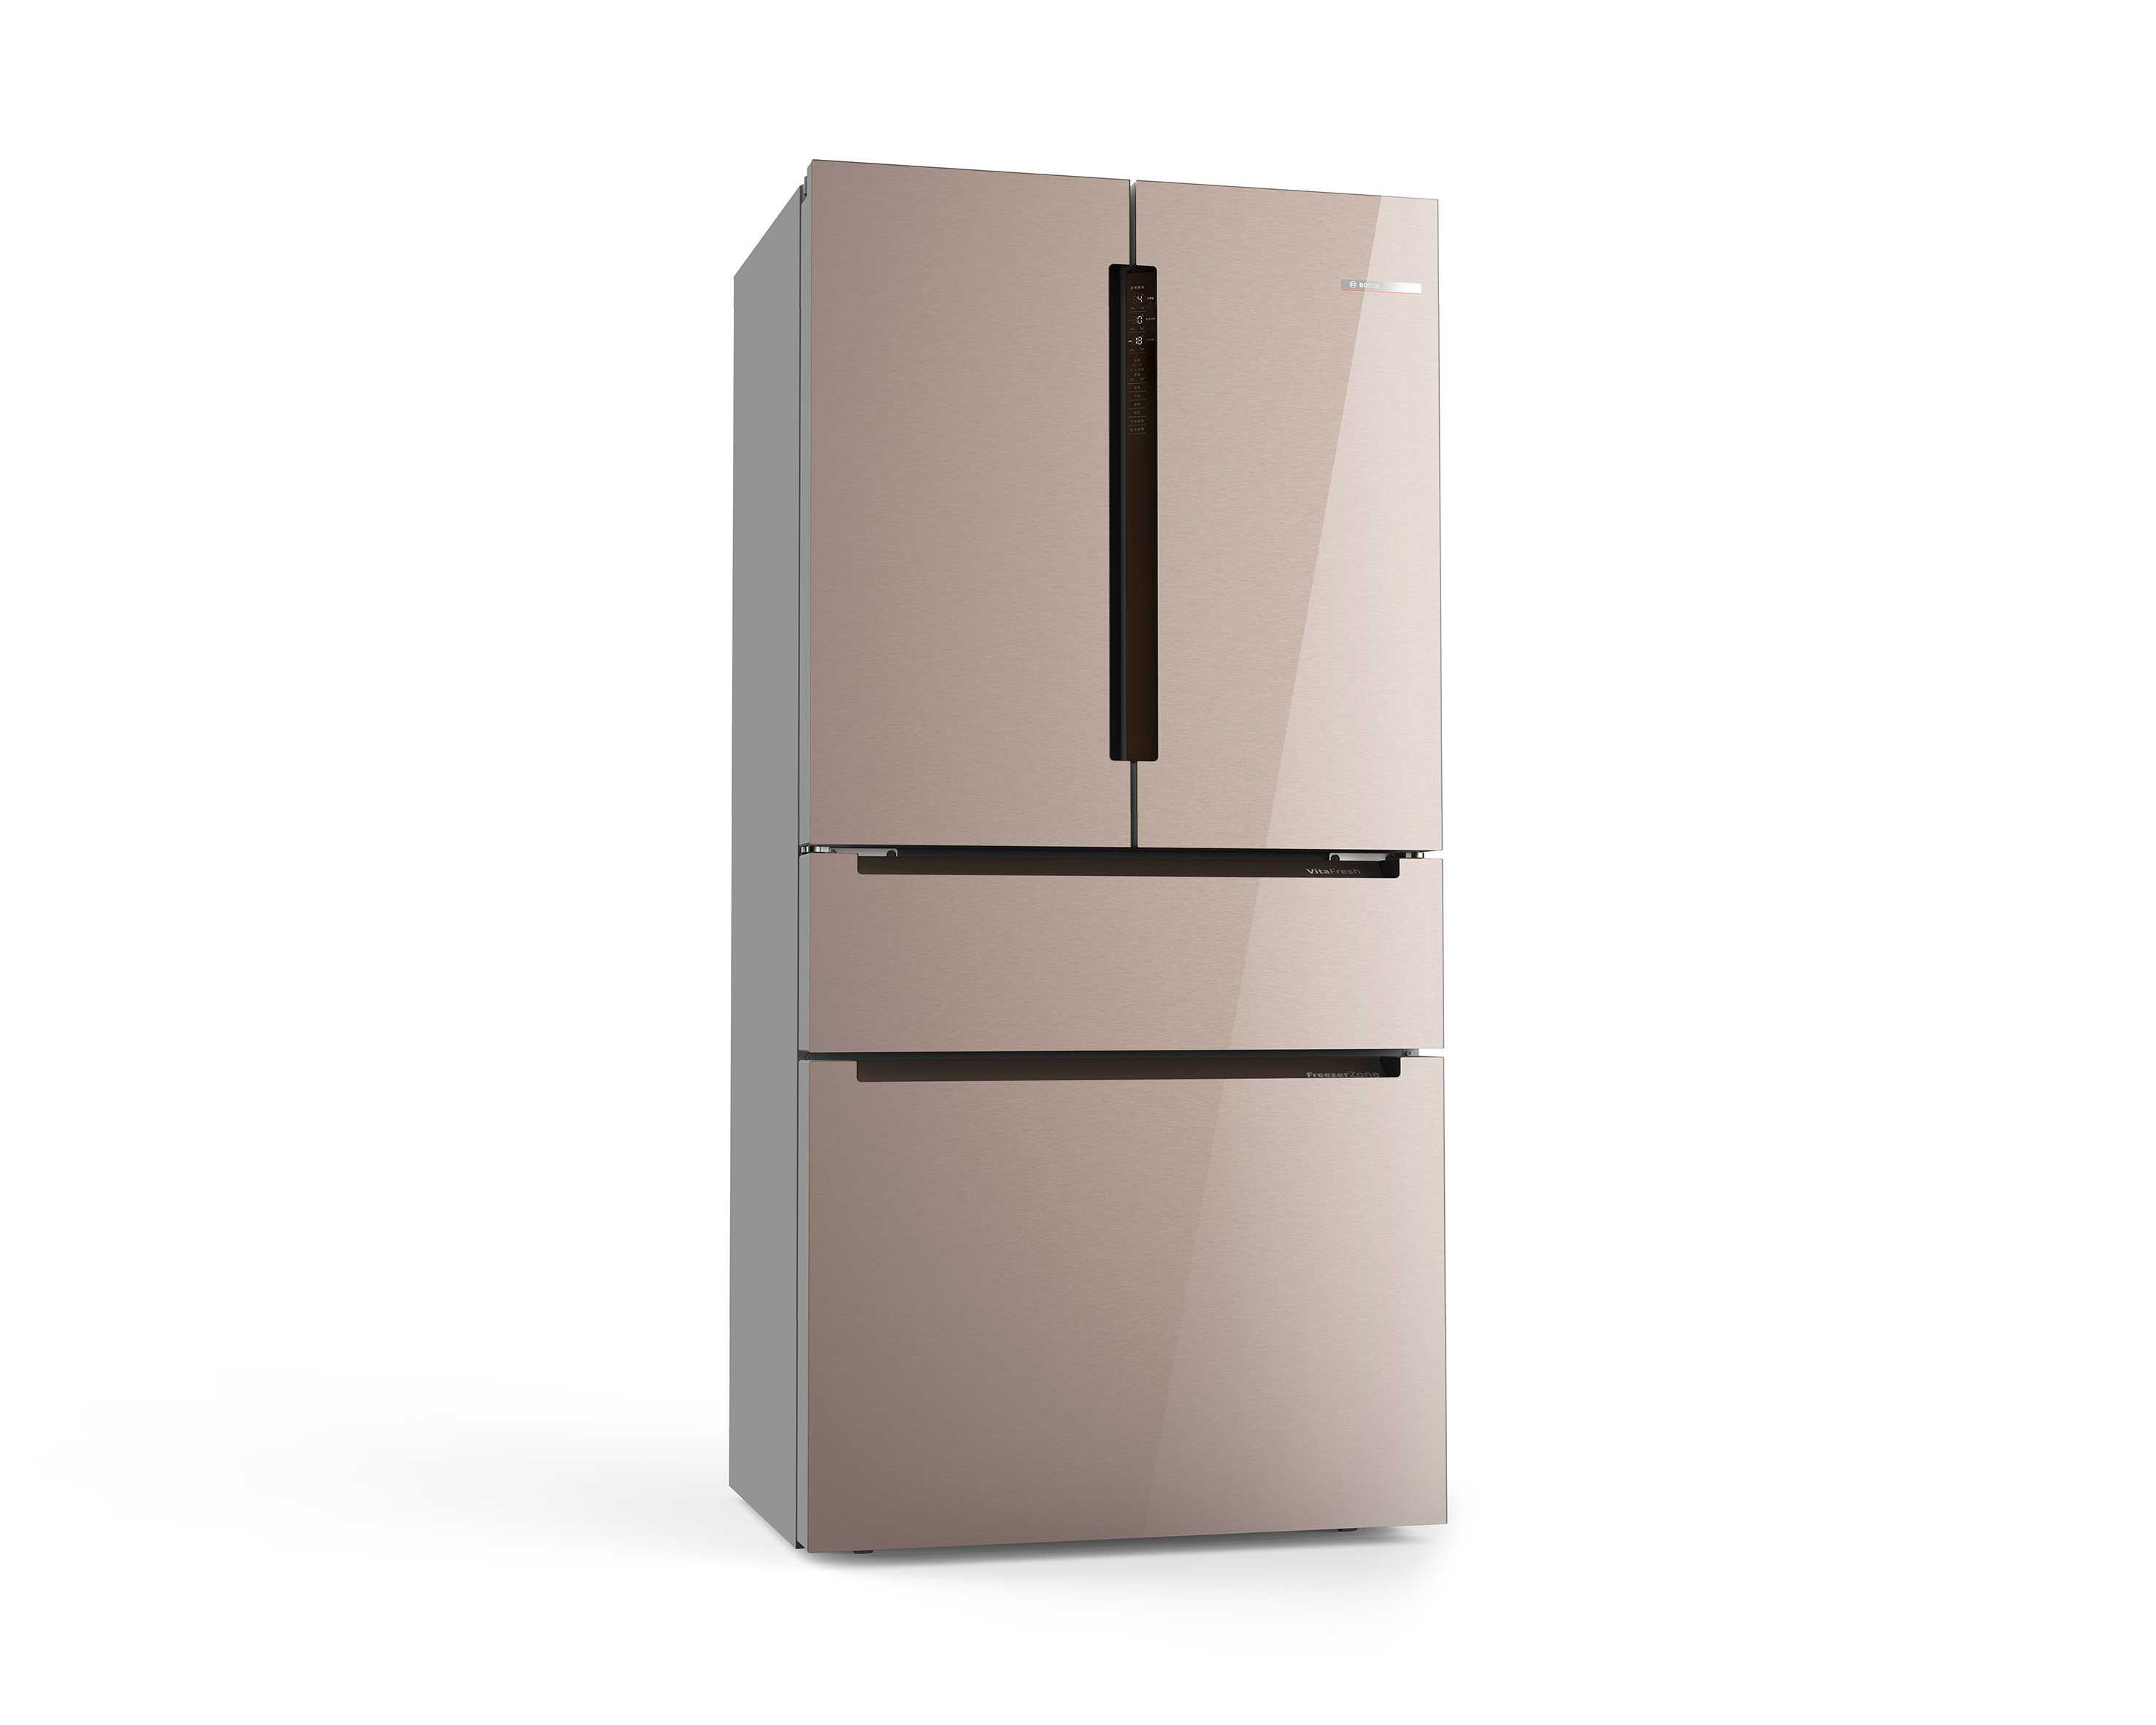 BOSCH VitaFresh multidoor fridge